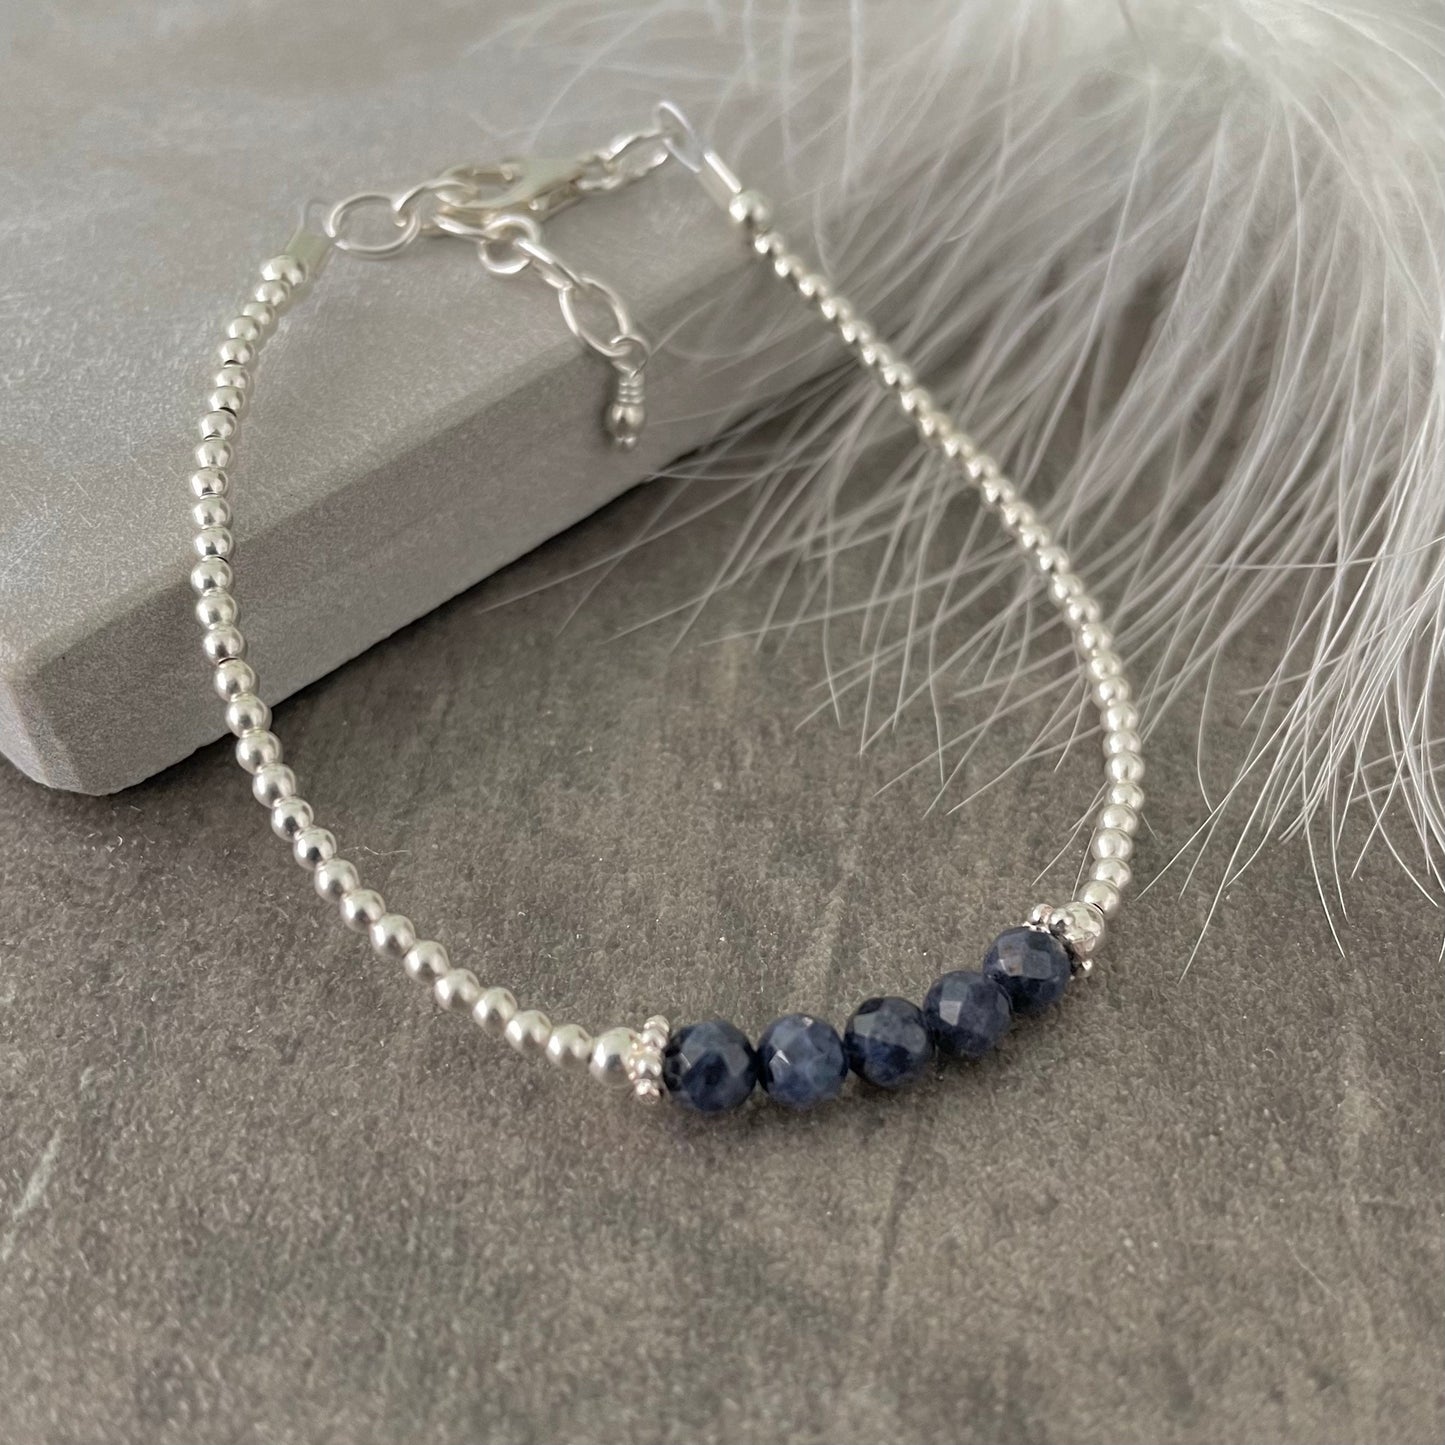 Blue Sapphire Bracelet, September Birthstone nft